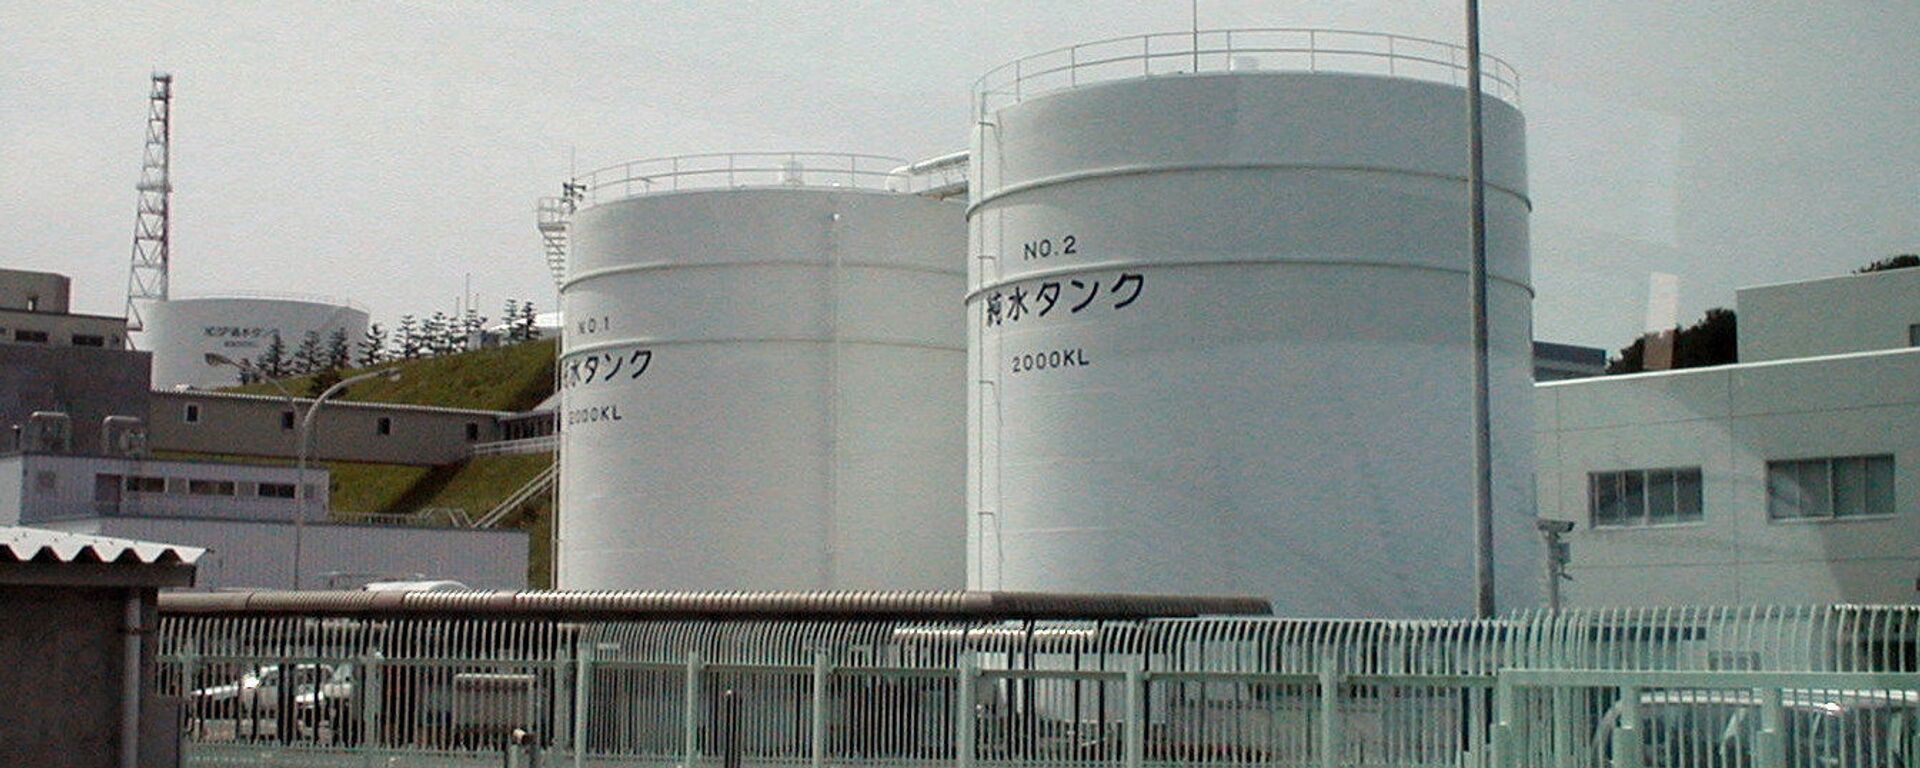 Nhà máy điện hạt nhân Fukushima-1 tại Nhật Bản được xây dựng vào những năm 1960. Vào thời điểm xảy ra thảm họa, đây là một trong những nhà máy vận hành lâu đời nhất, không có hệ thống an toàn chủ động và thụ động, như các nhà máy hiện đại. - Sputnik Việt Nam, 1920, 02.06.2022